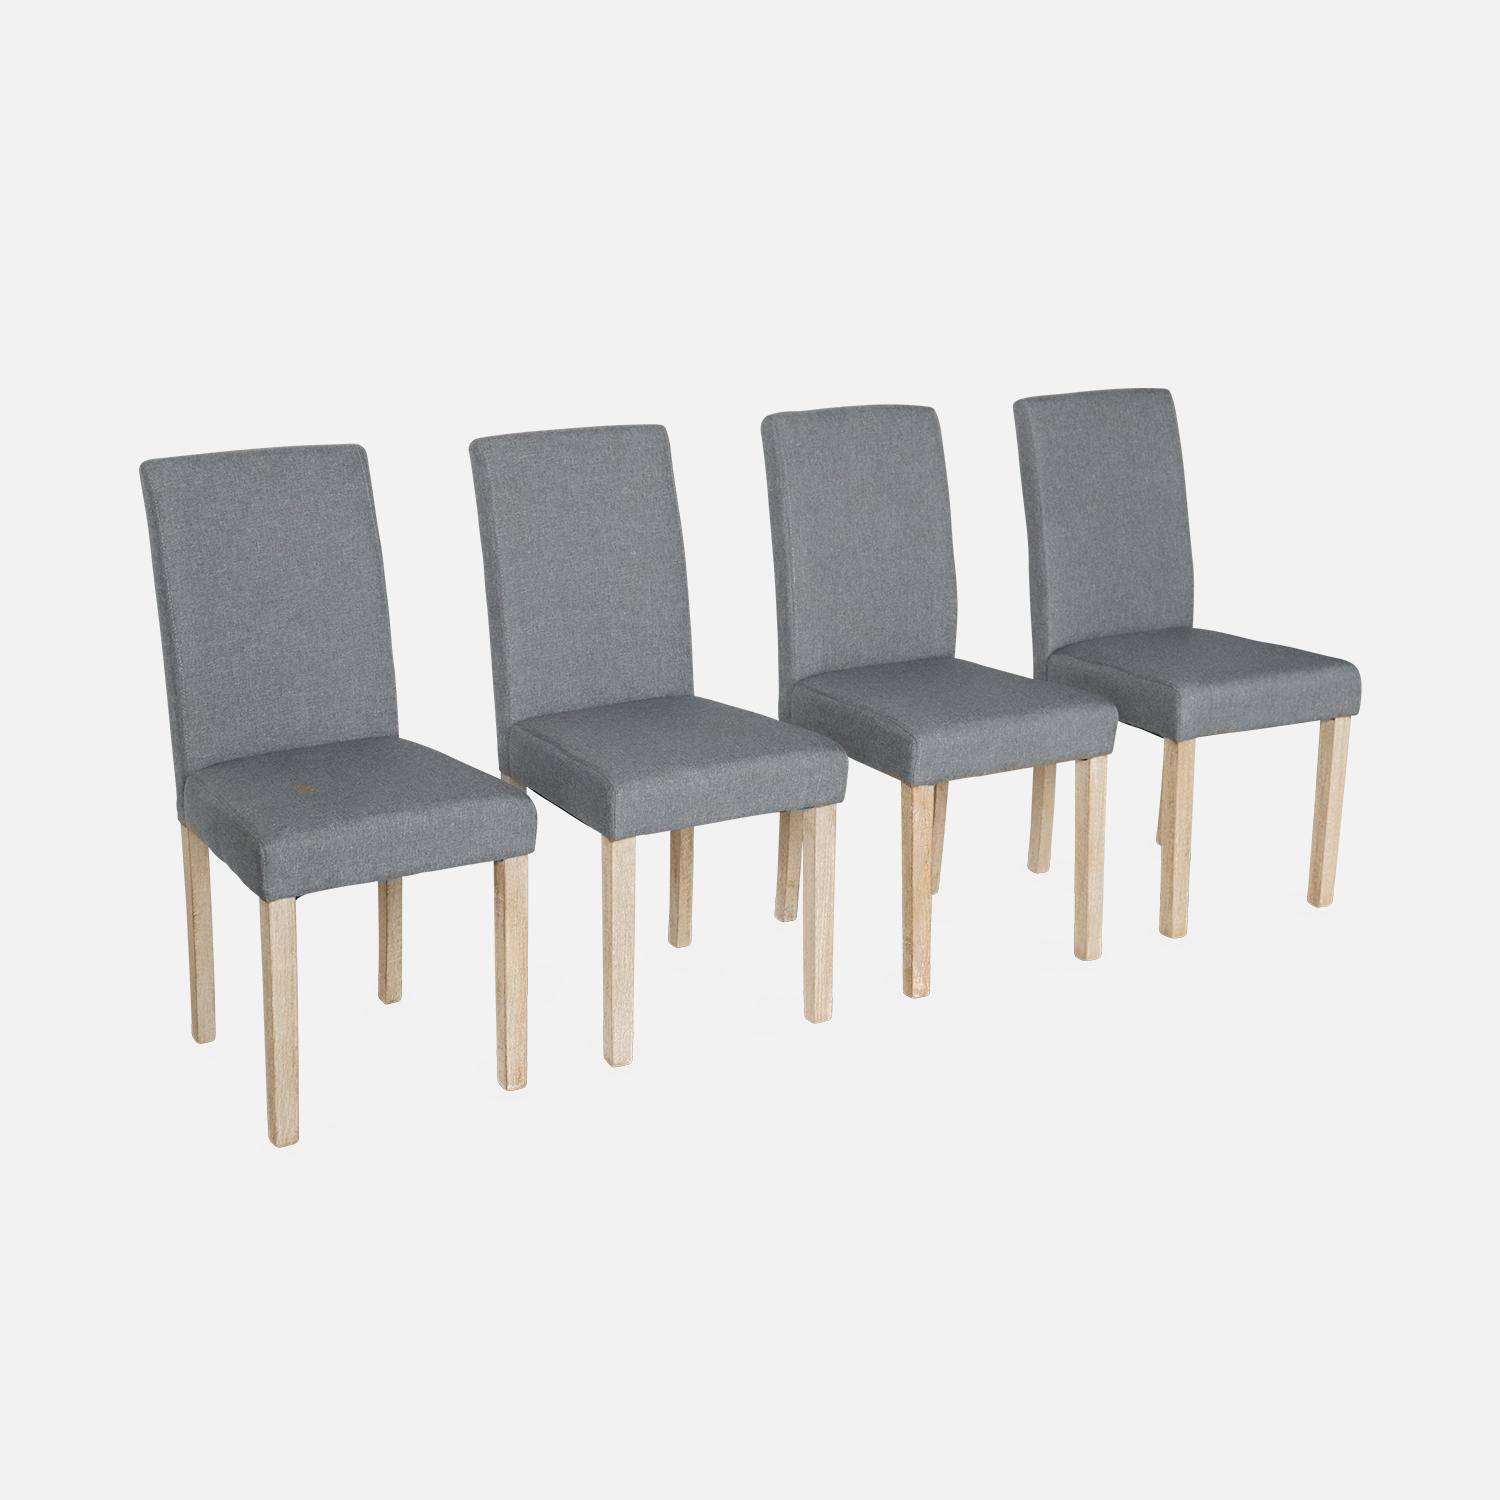 Set di 4 sedie - Rita - sedie in tessuto, gambe in legno ceruleo